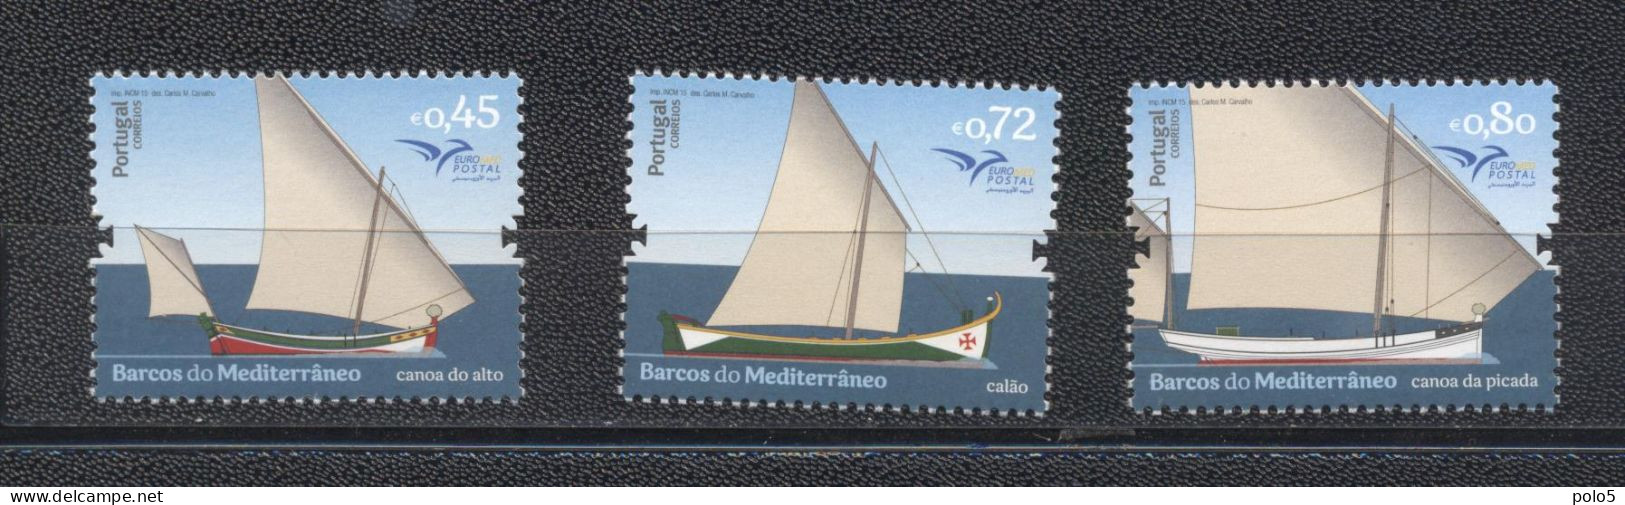 Portugal 2015-Euromed: Boats Of The Mediterranean Set (3v) - Nuevos